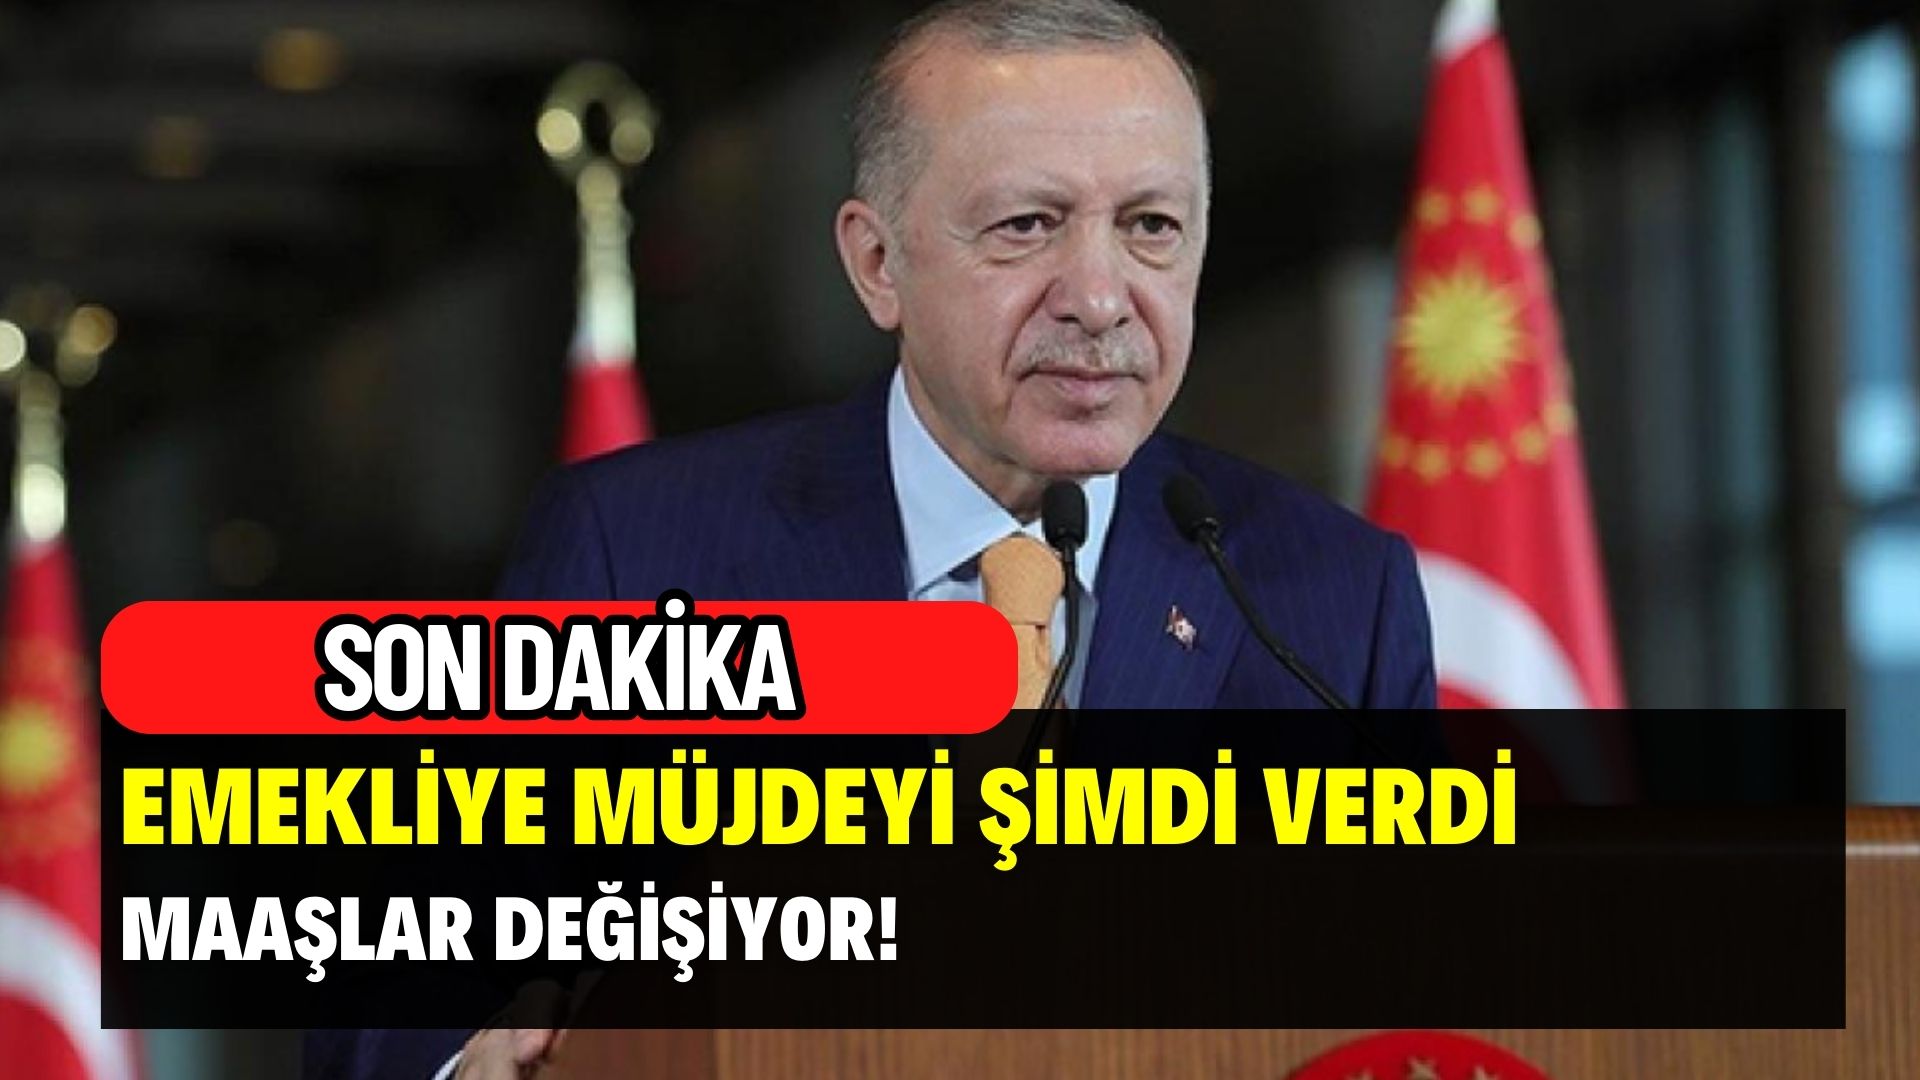 Son dakika Erdoğan Emekliye müjdeyi şimdi verdi! Maaşlara ek zam geliyor